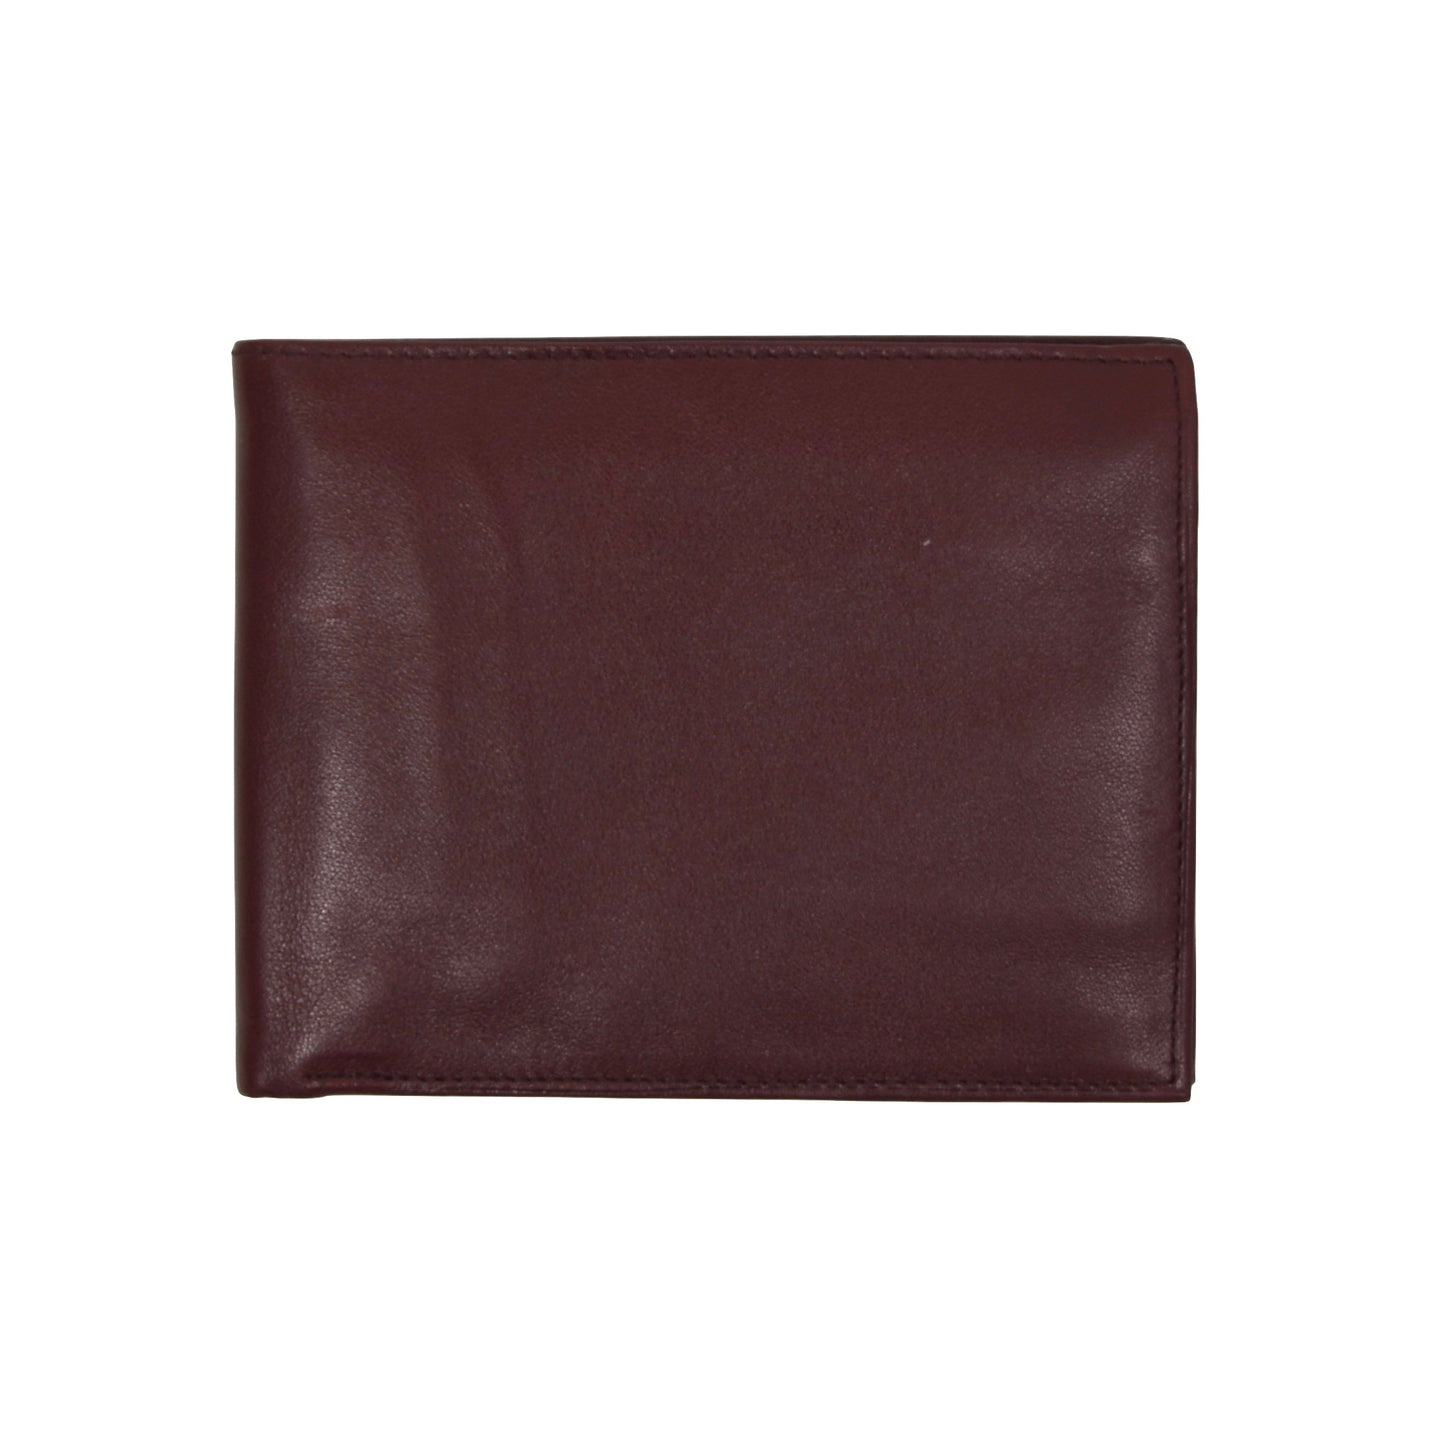 Creation Weiss Leather Wallet/Billfold - Burgundy